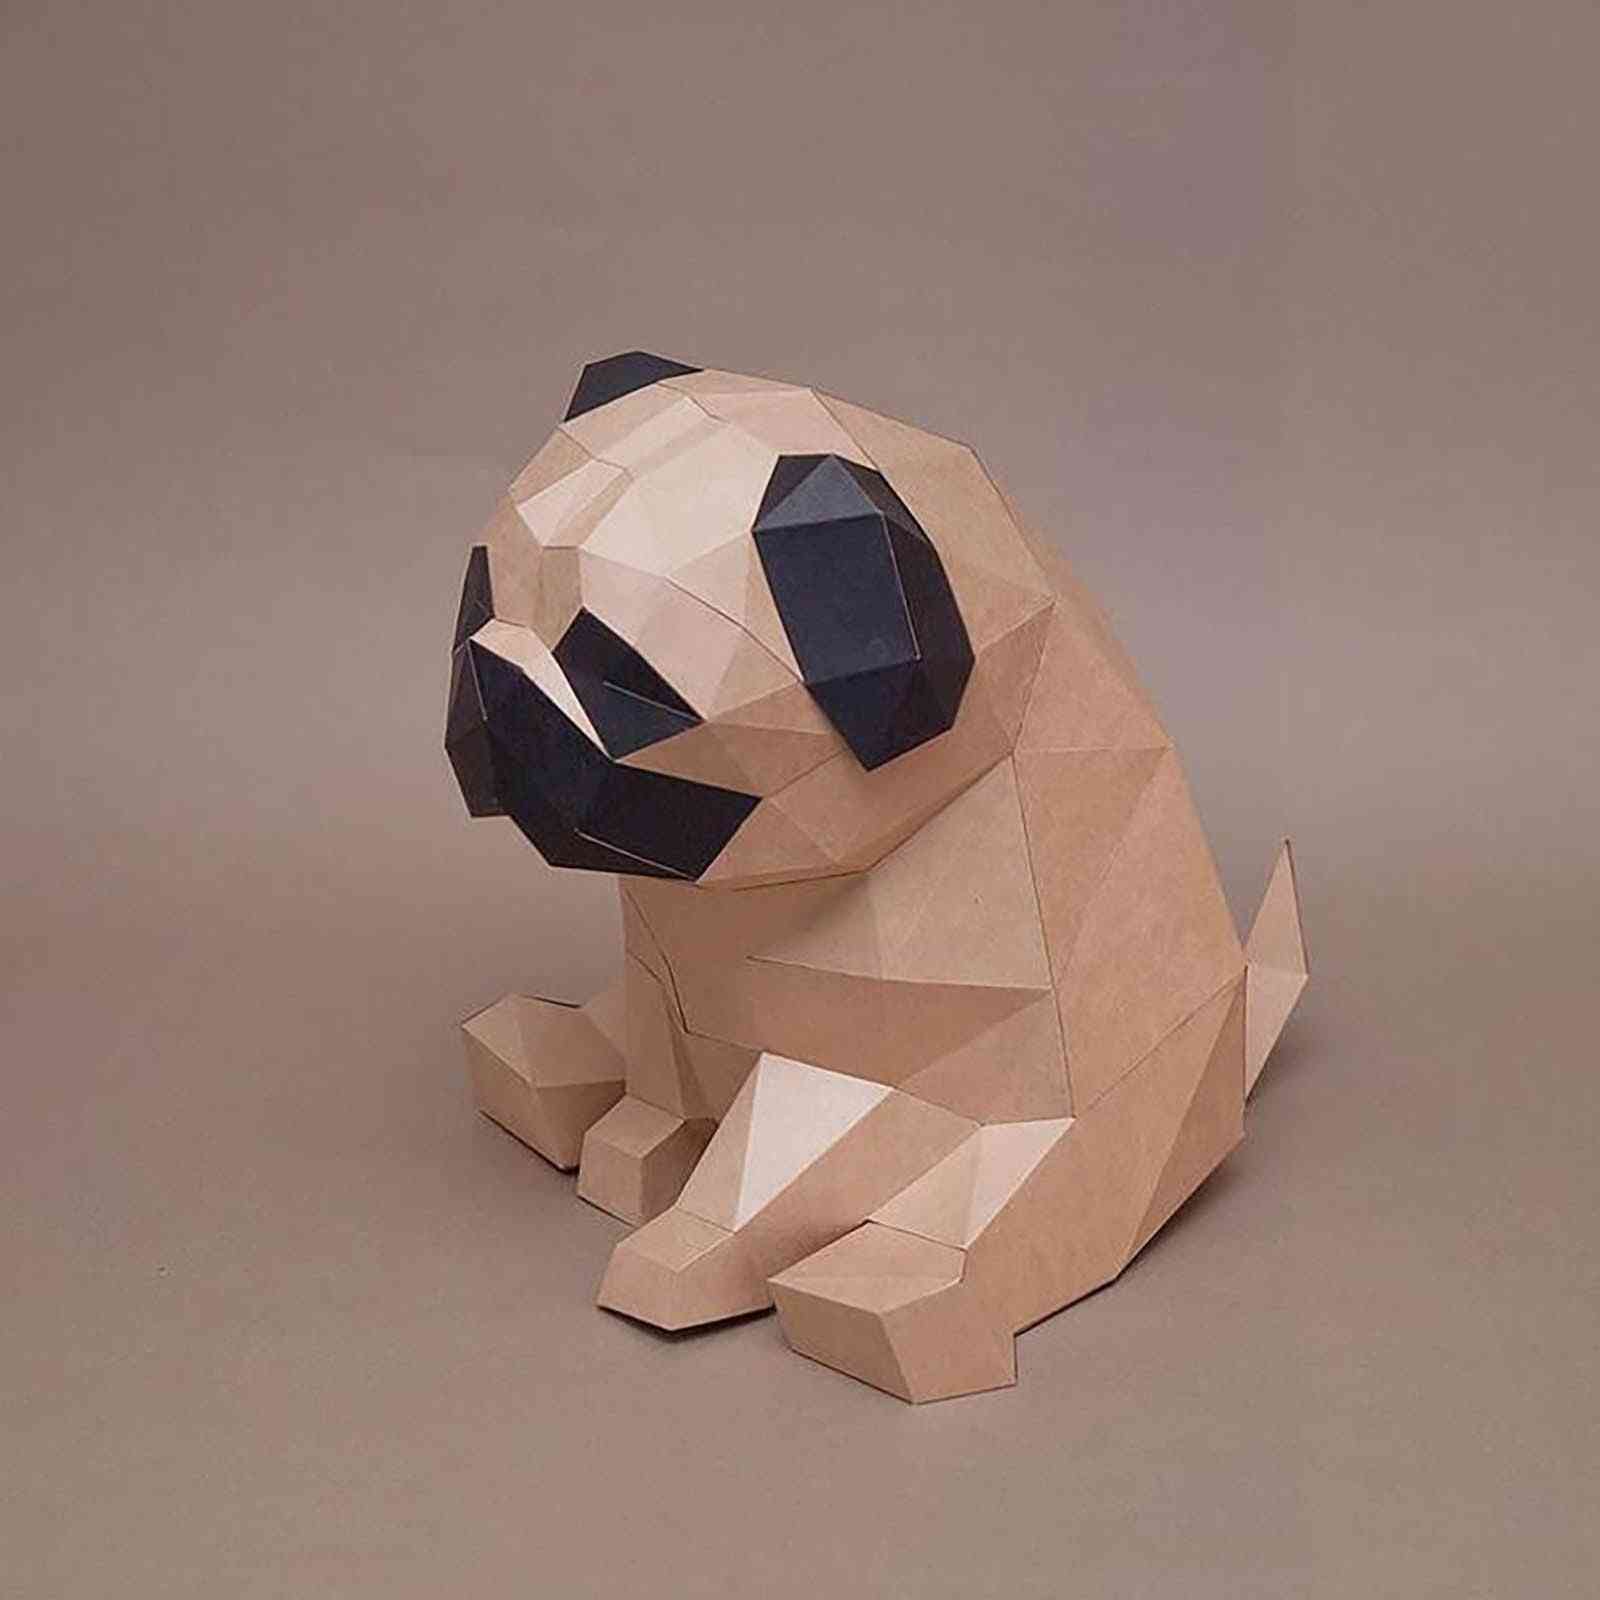 3D model- kreativní zvířata z papírnictví, domácí dekorace na zeď, hádanky